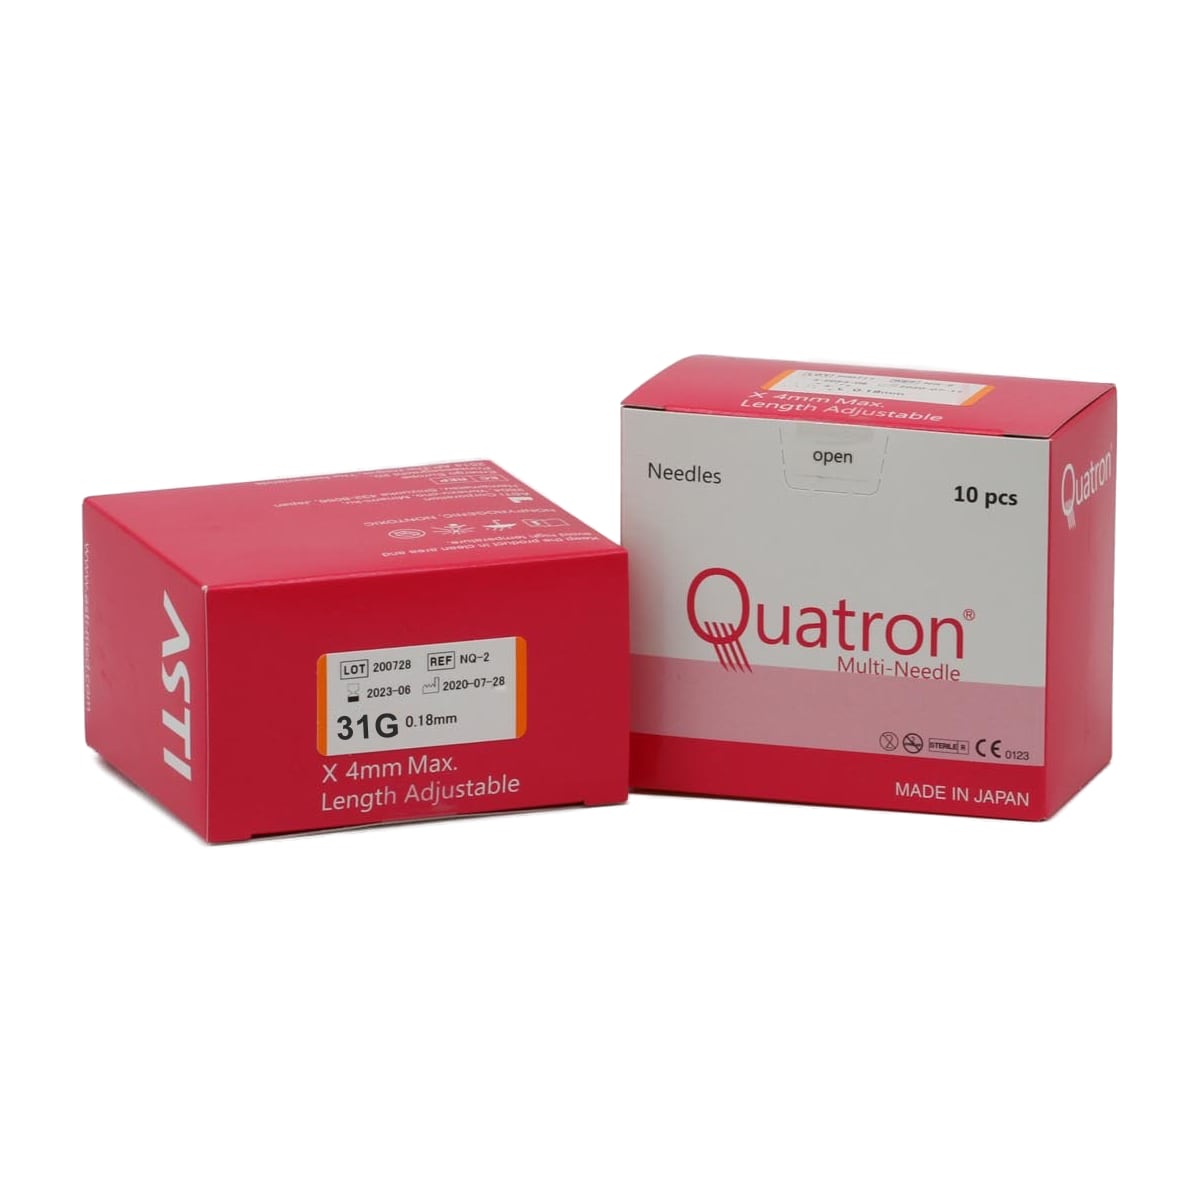 Quatron Multi-Needle 31G